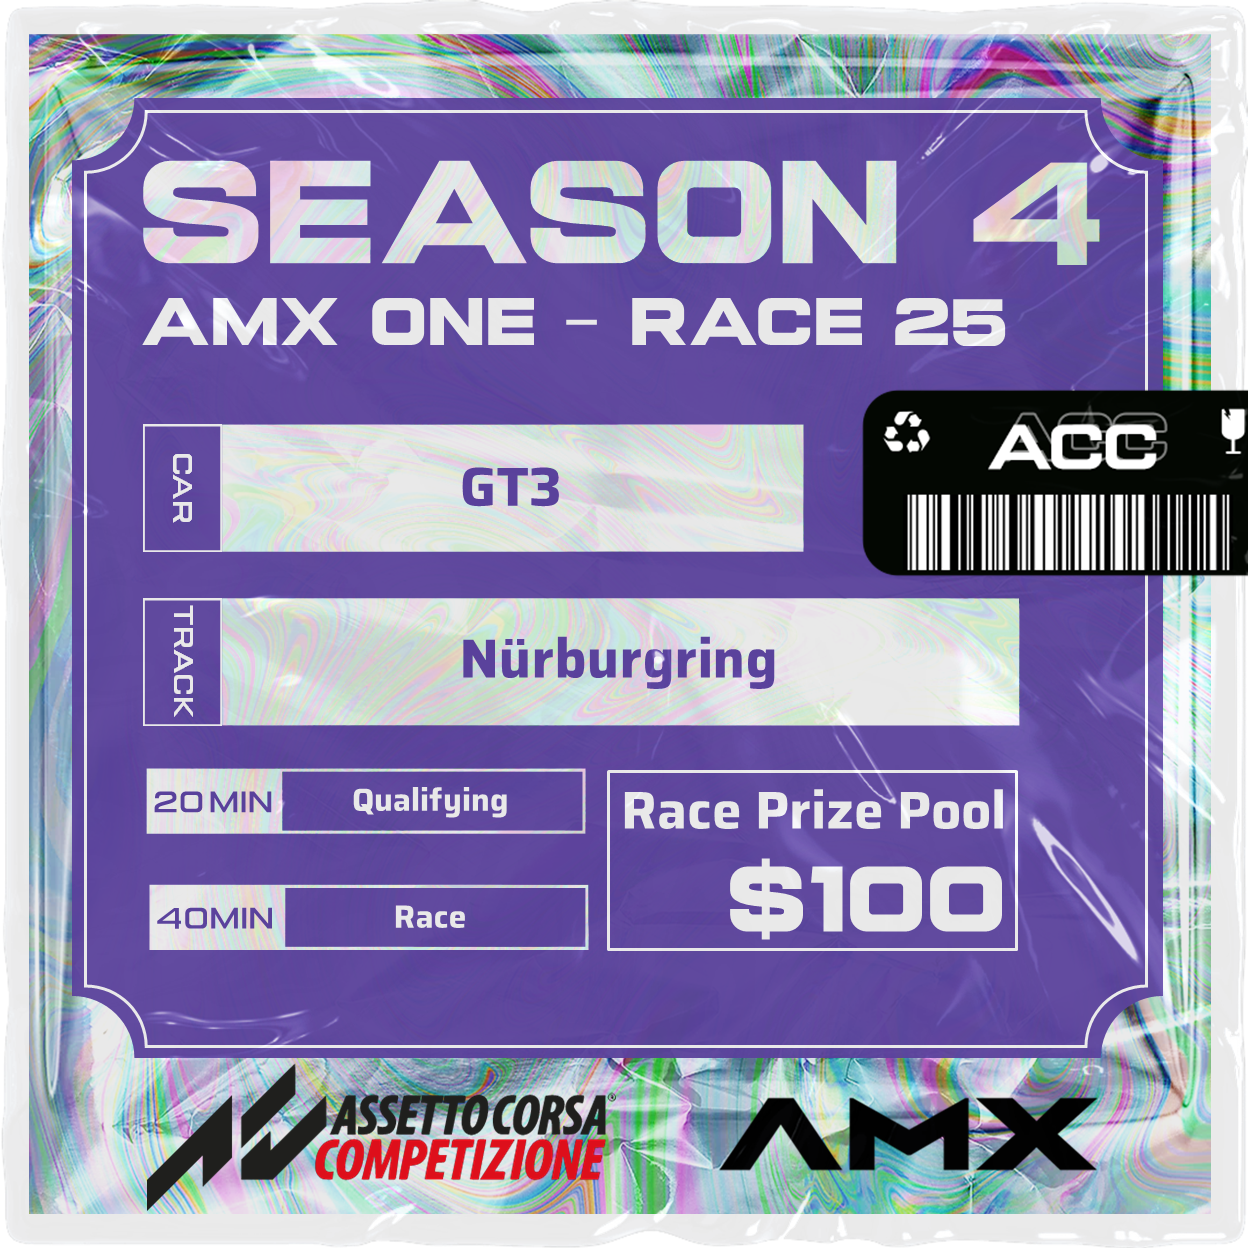 AMX ONE - RACE 25 [3/31 - 5:50 PM GMT]